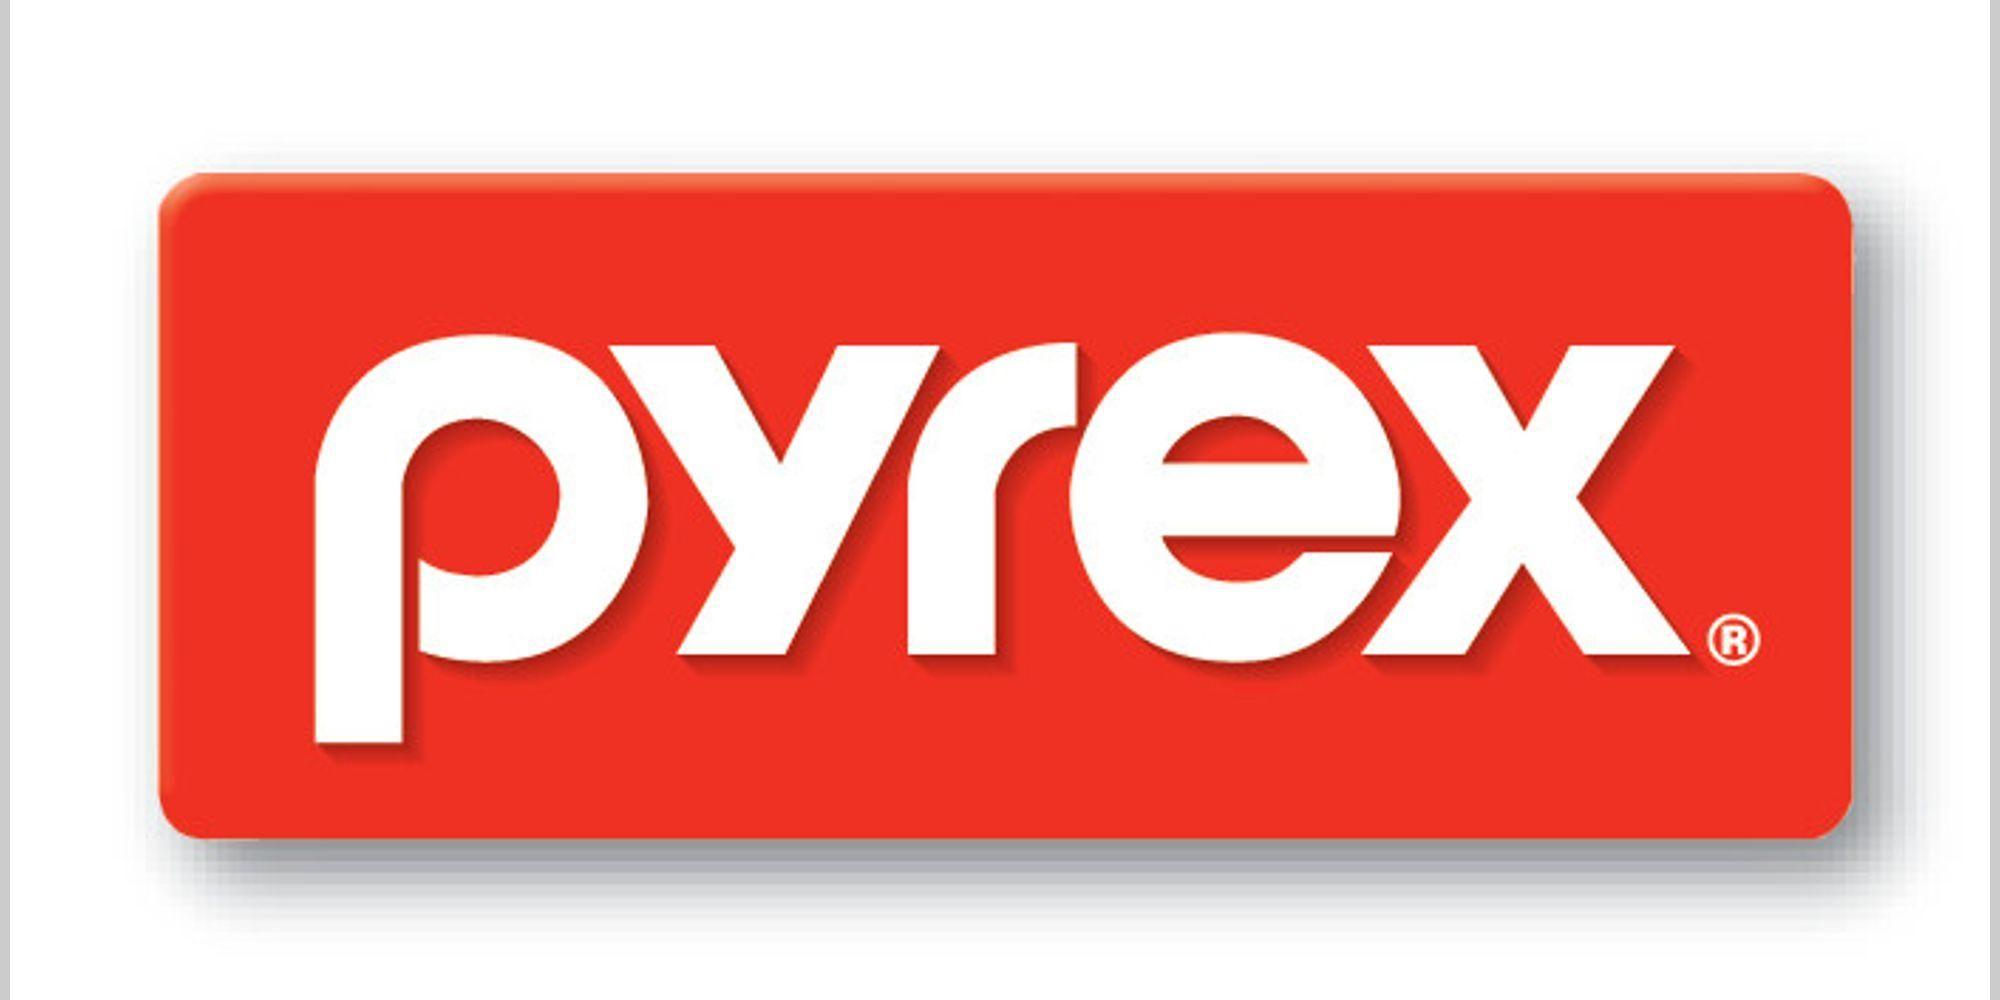 Pyrex Logo - Pyrex Glass Mixing Bowl Set (3-Piece) | eBay